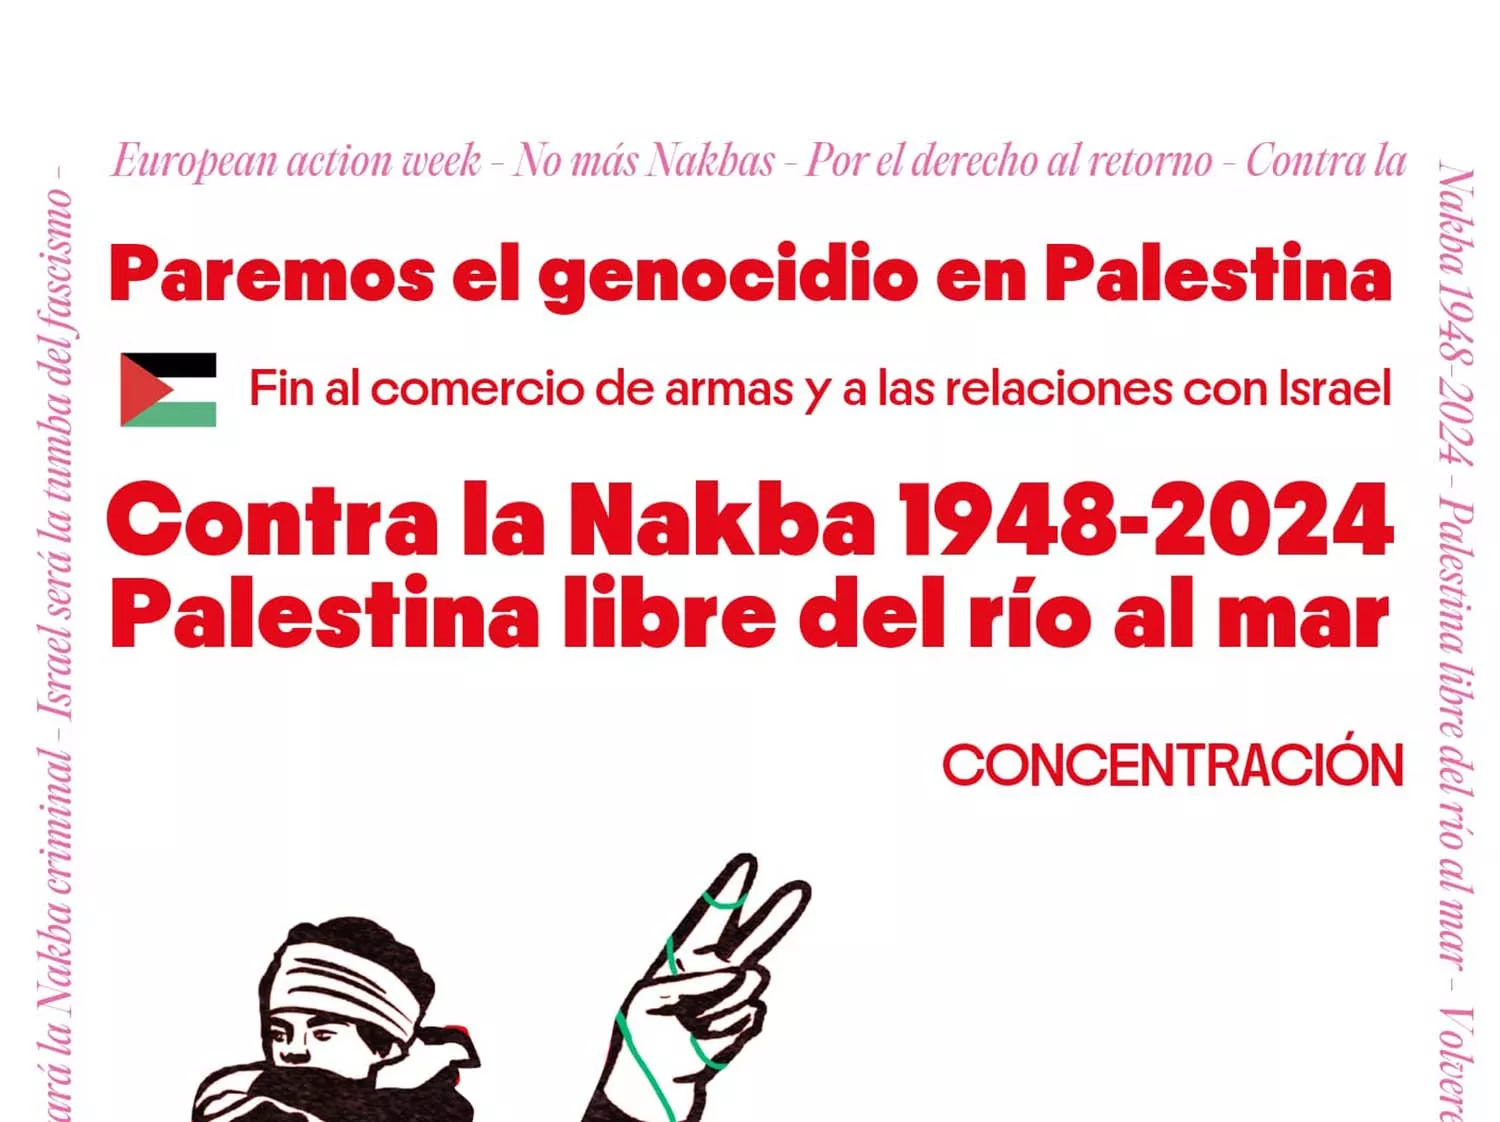 Una concentración en Ponferrada pedirá el fin del genocidio en Palestina este domingo